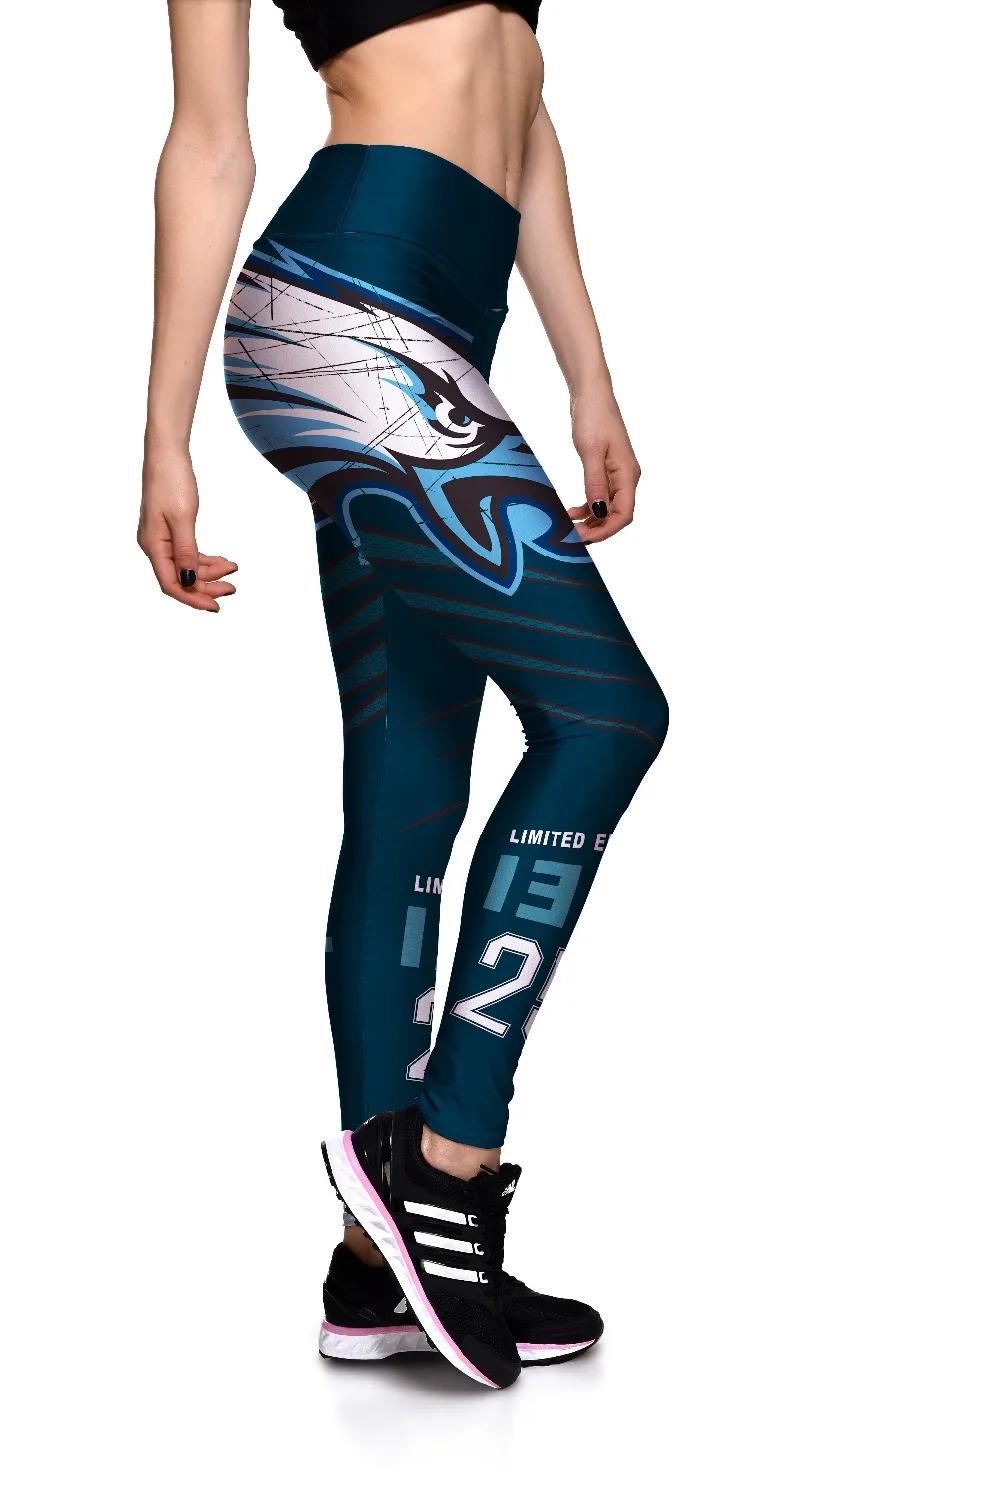 Размеры S до 3XL, женские спортивные брюки в полоску с принтом, серые, синие спортивные штаны для спортзала, 3 узора